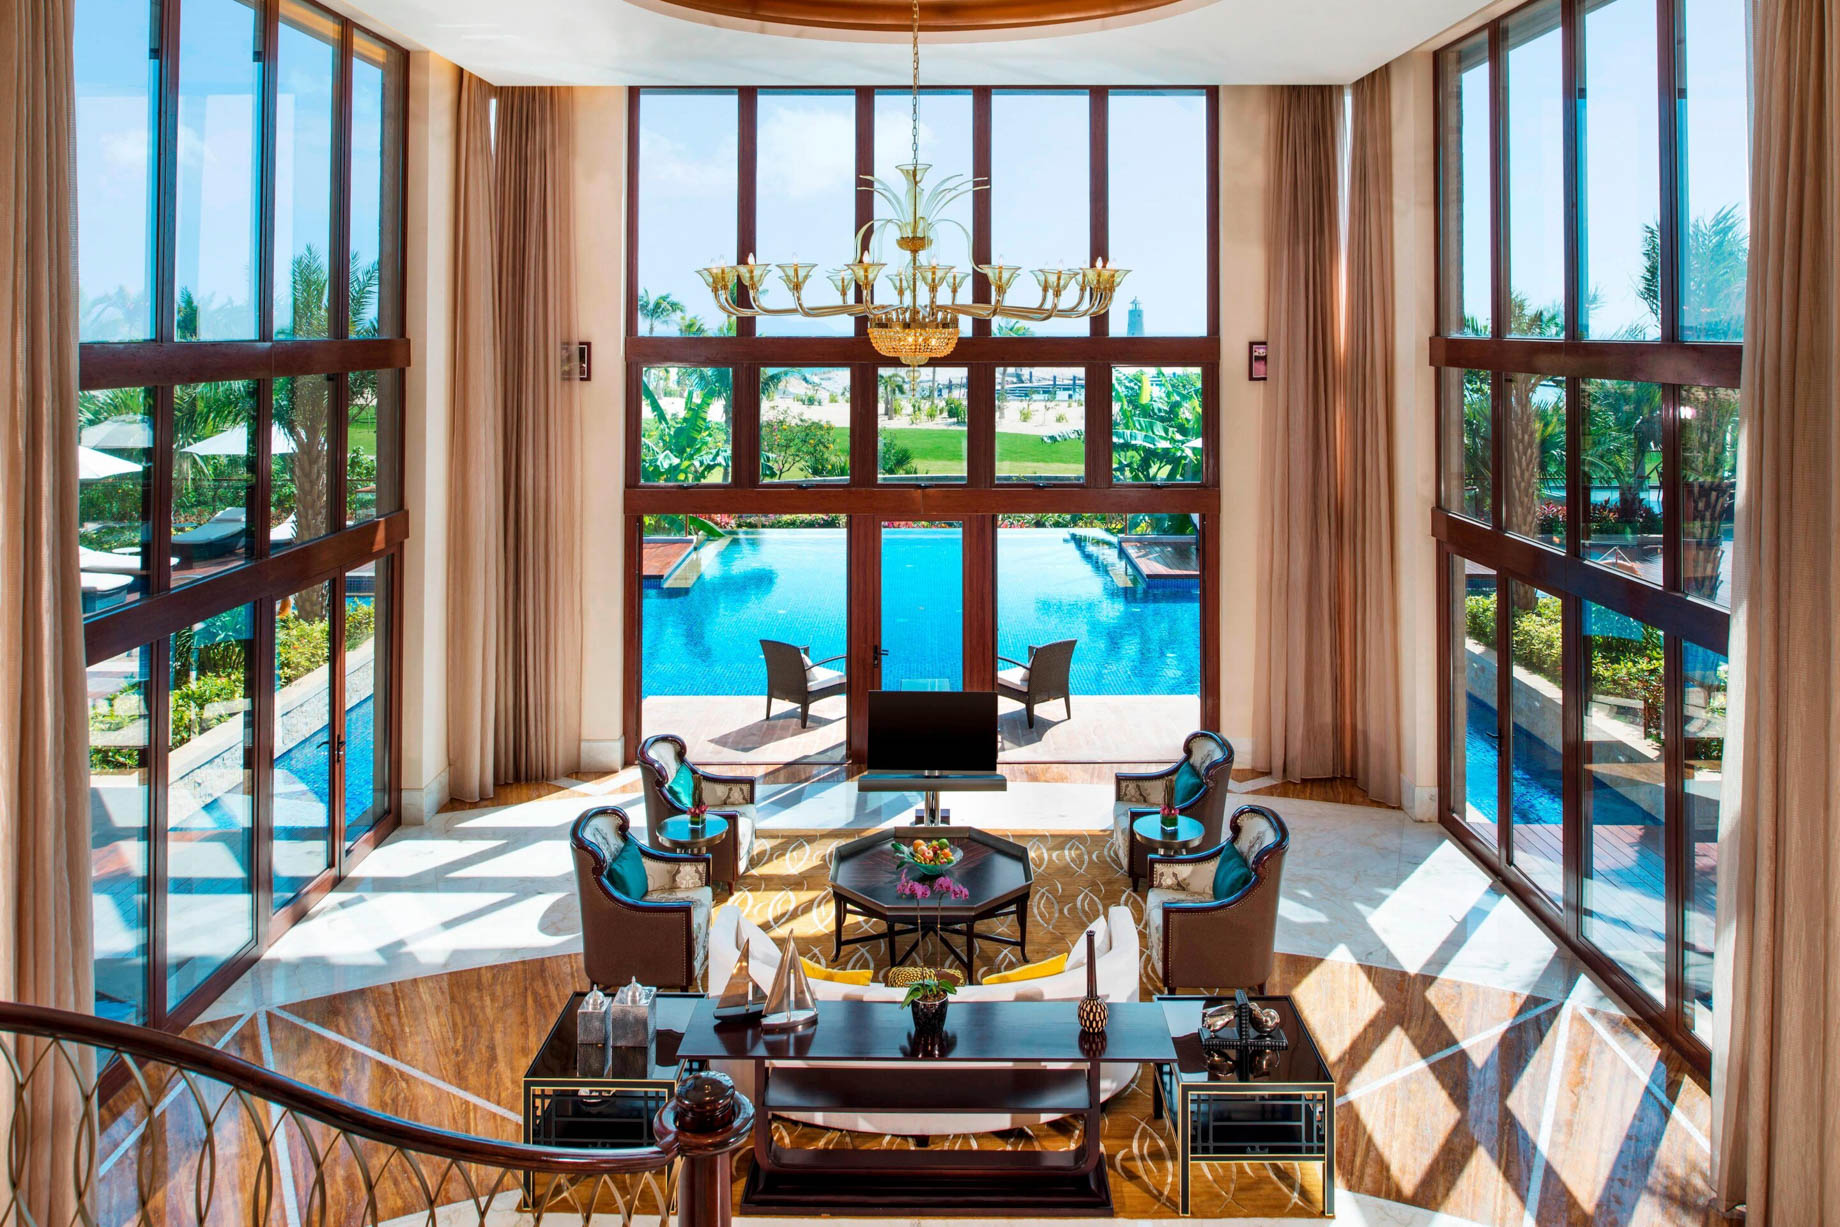 The St. Regis Sanya Yalong Bay Resort – Hainan, China – Presidential Villa Pool View